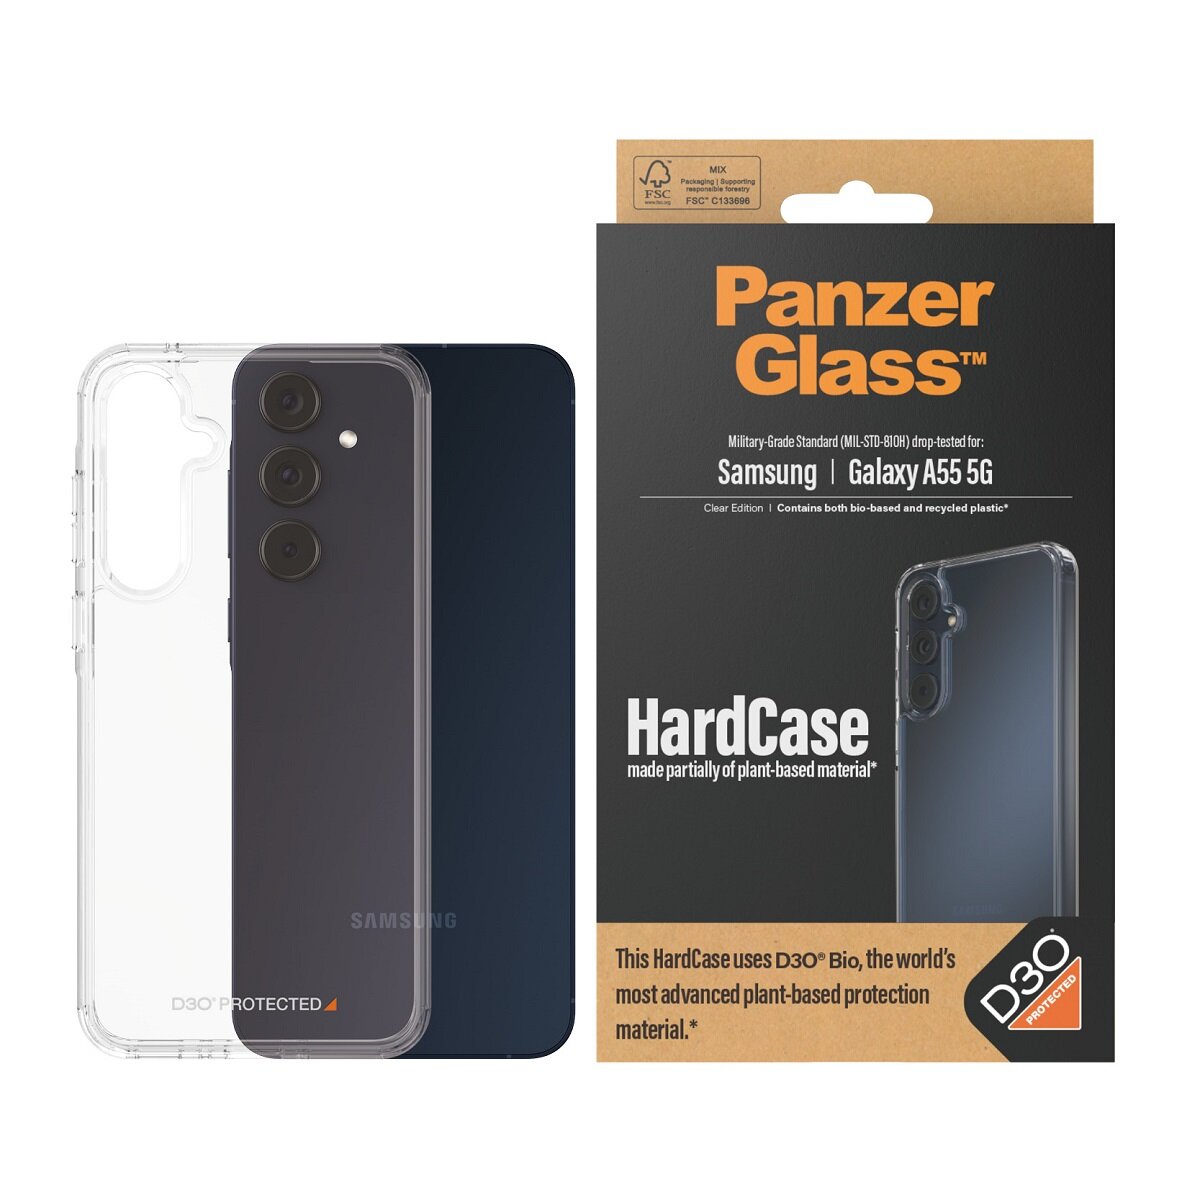 Etui PanzerGlass HardCase Galaxy A55 5G wraz z telefonem oraz opakowanie od frontu